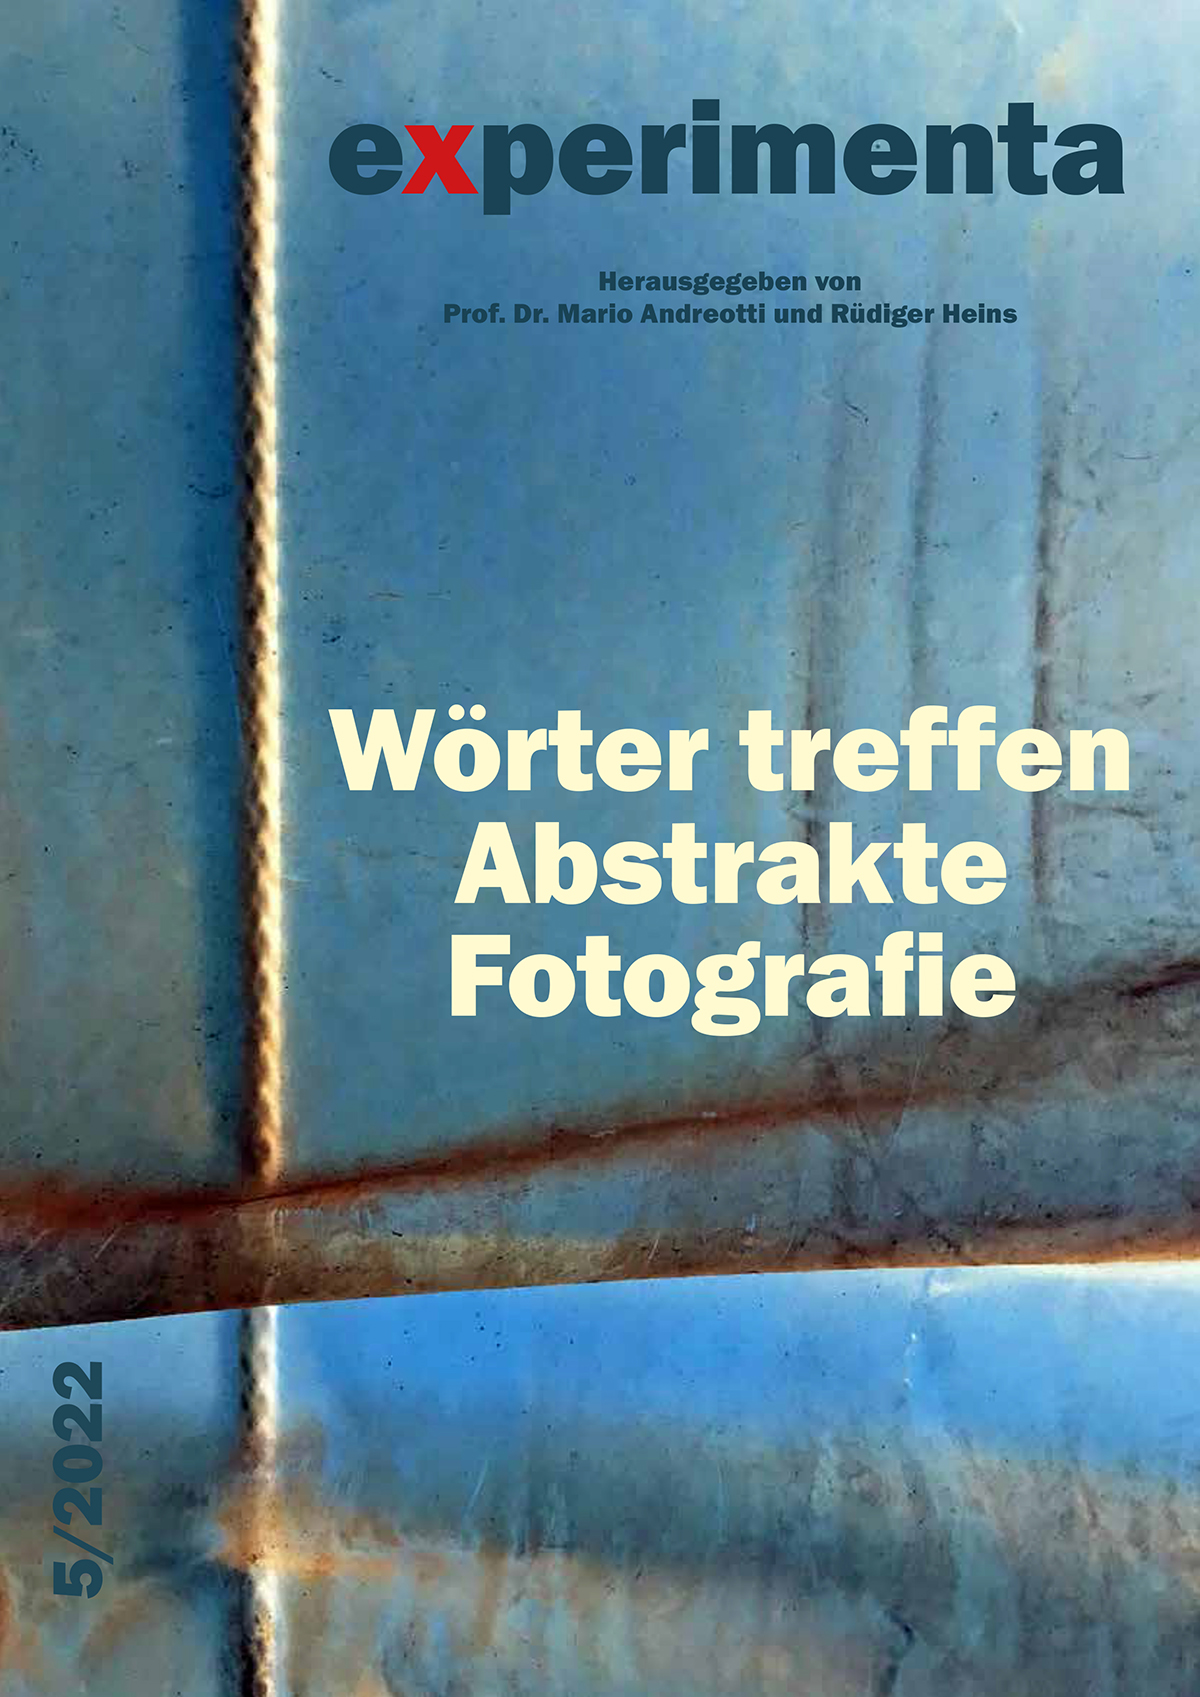 Der Vorhang hebt sich, Abstrakte Fotografie, Ulrich Raschke, eXperimenta 5/2022